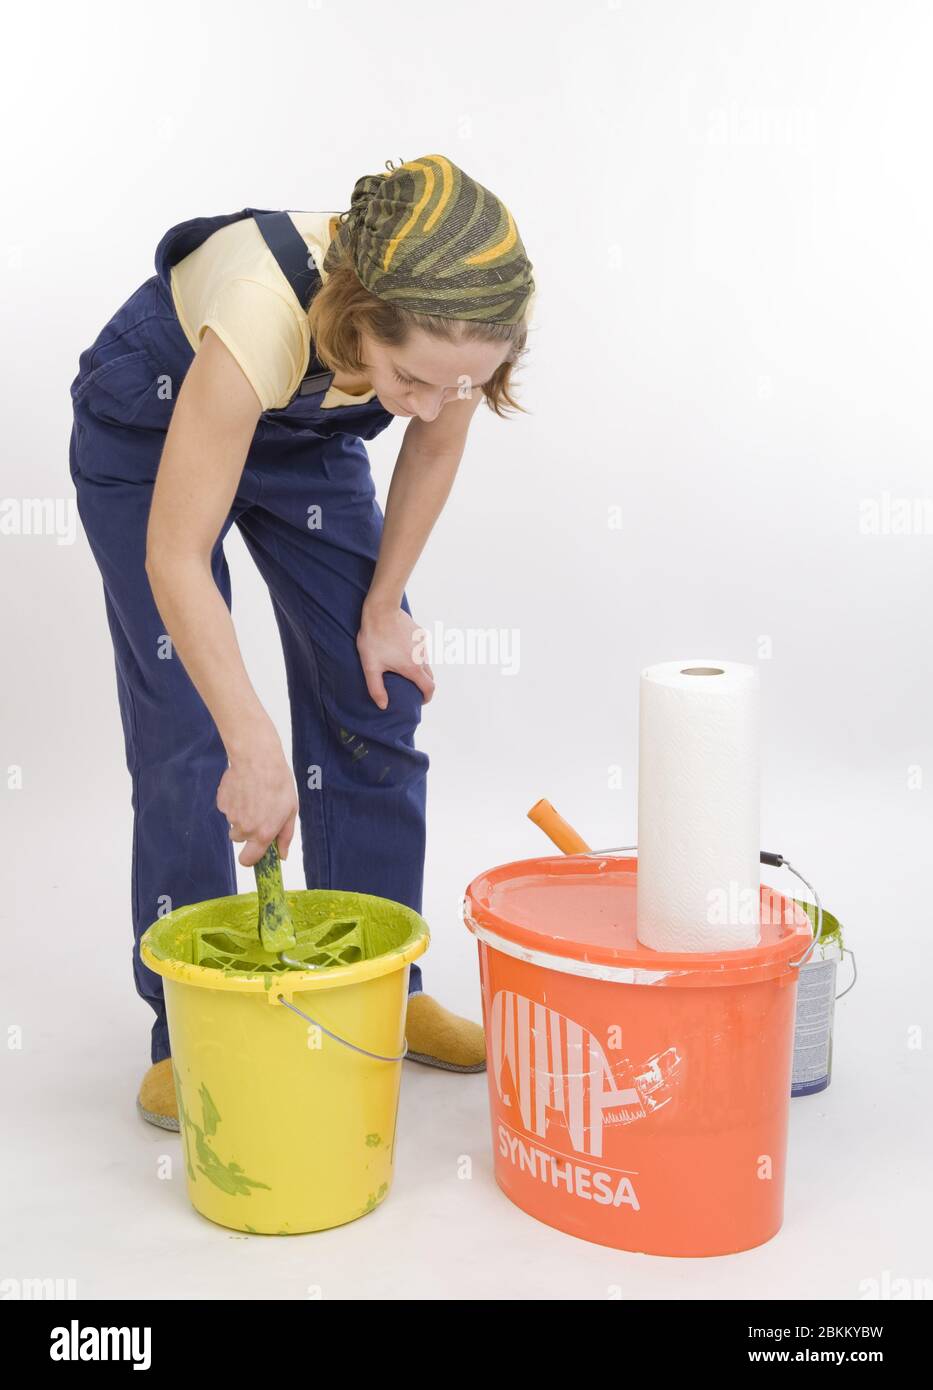 Junge Frau renoviert die Wohnung und ruehrt einen Eimer mit Farbe an, MR: Sì Foto Stock